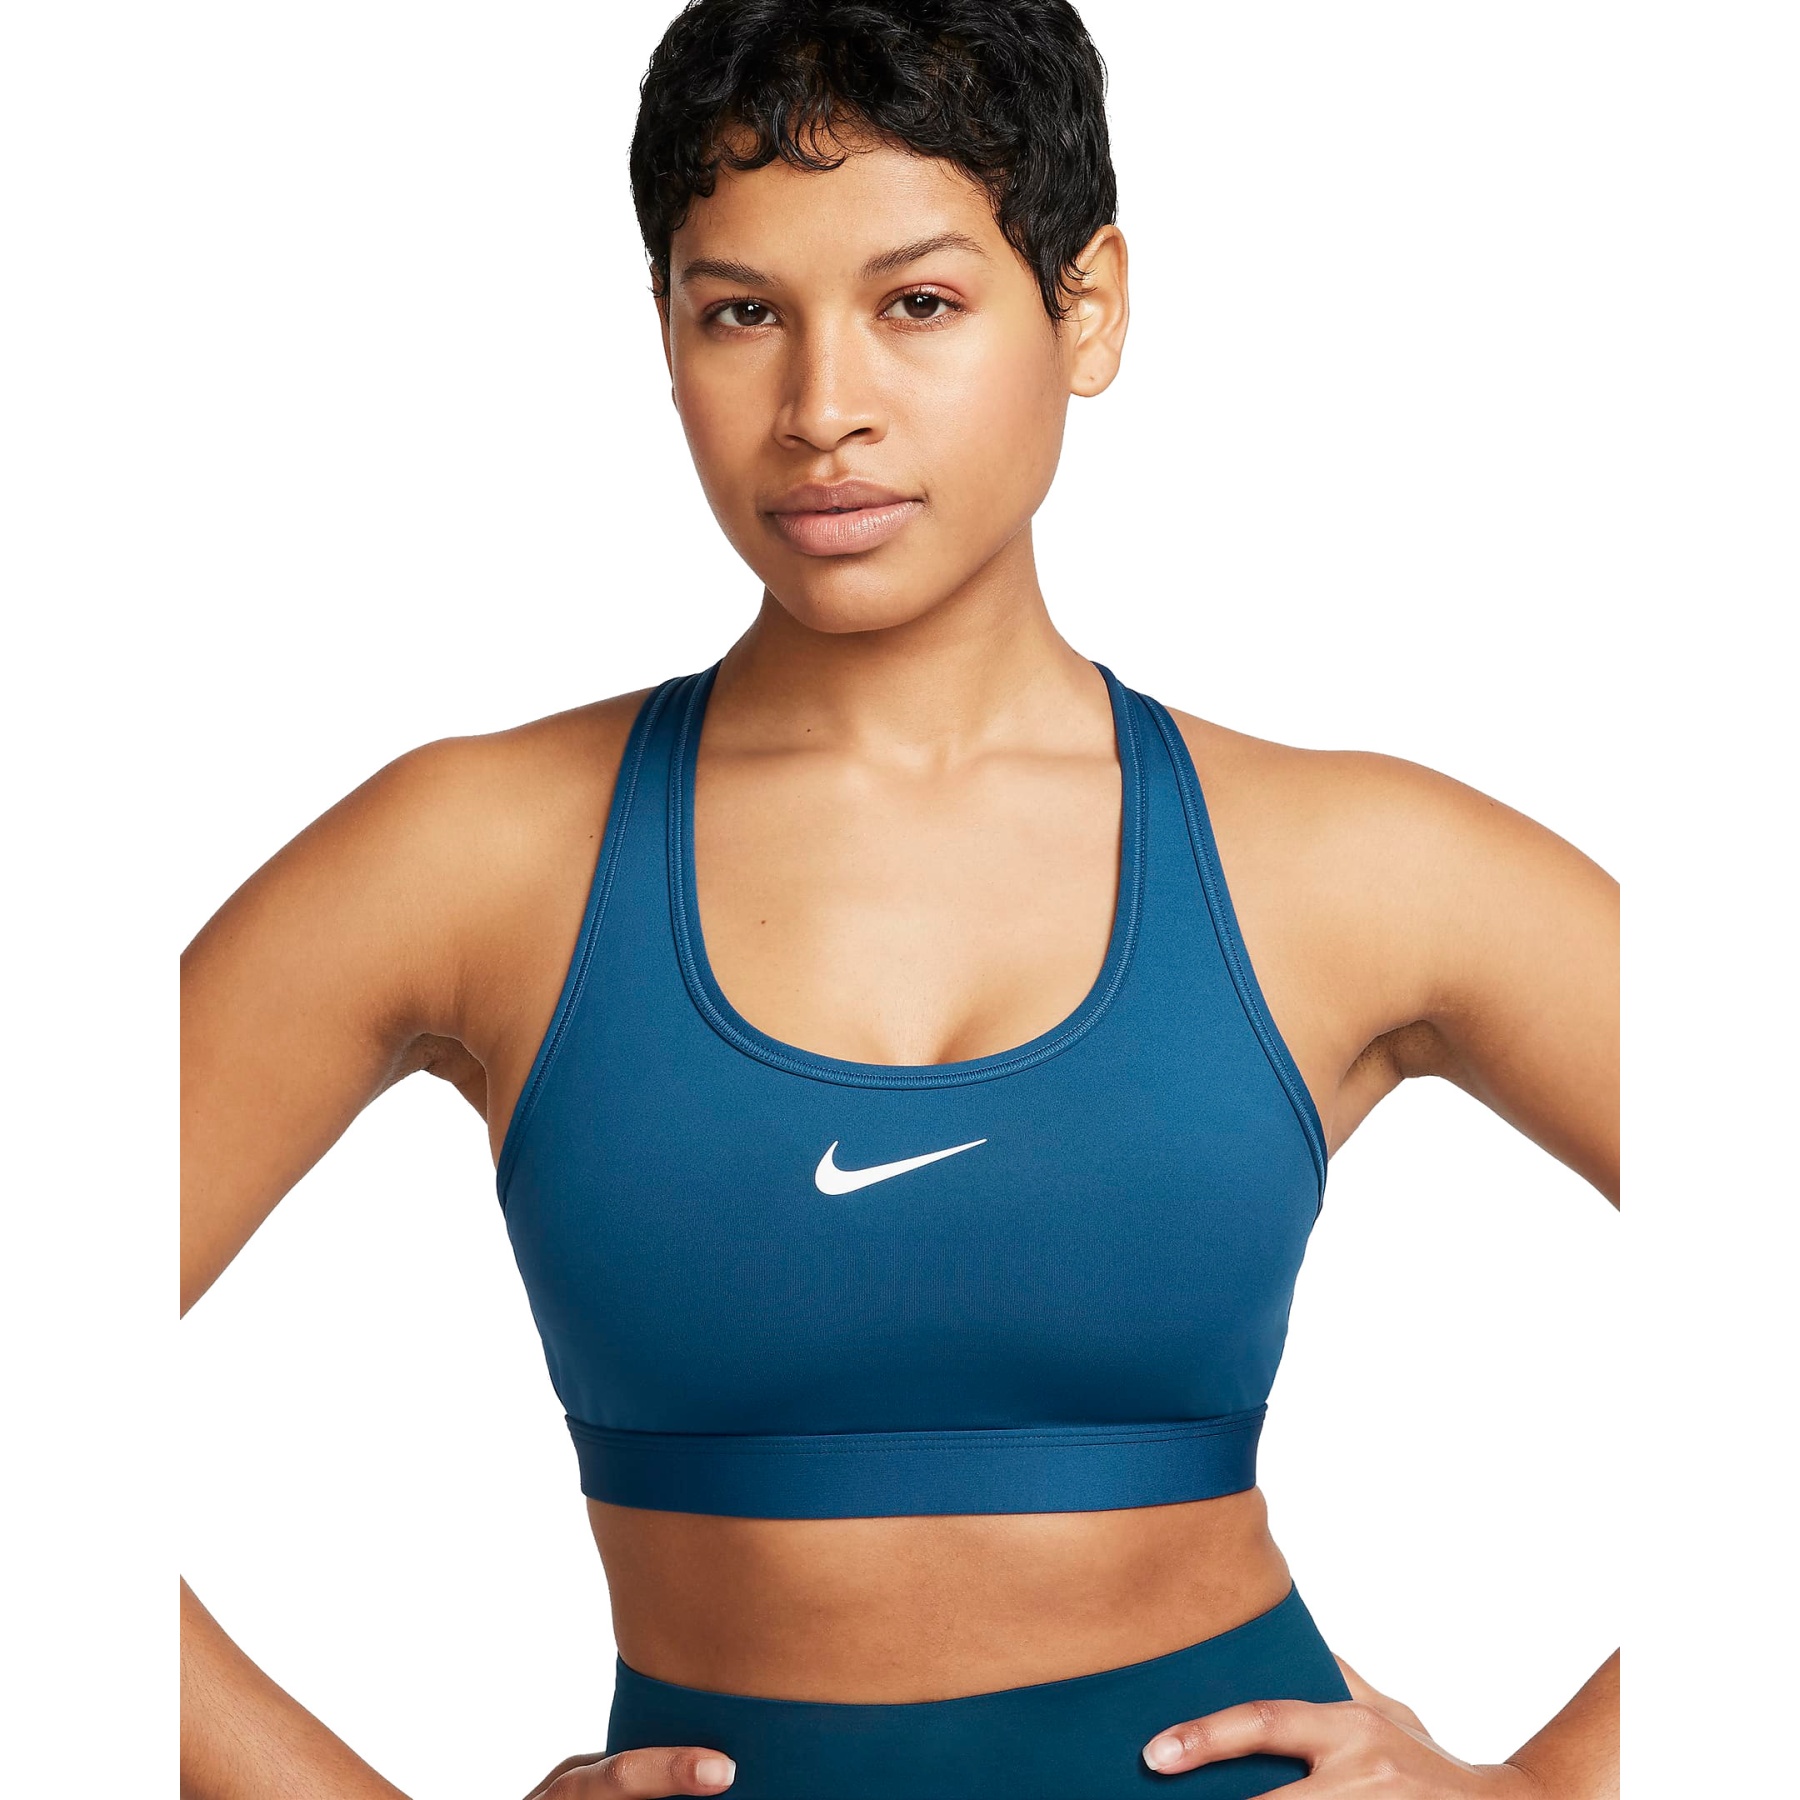 Produktbild von Nike Swoosh Medium Support Sport-BH mit Polster Damen - court blue/white DX6821-476